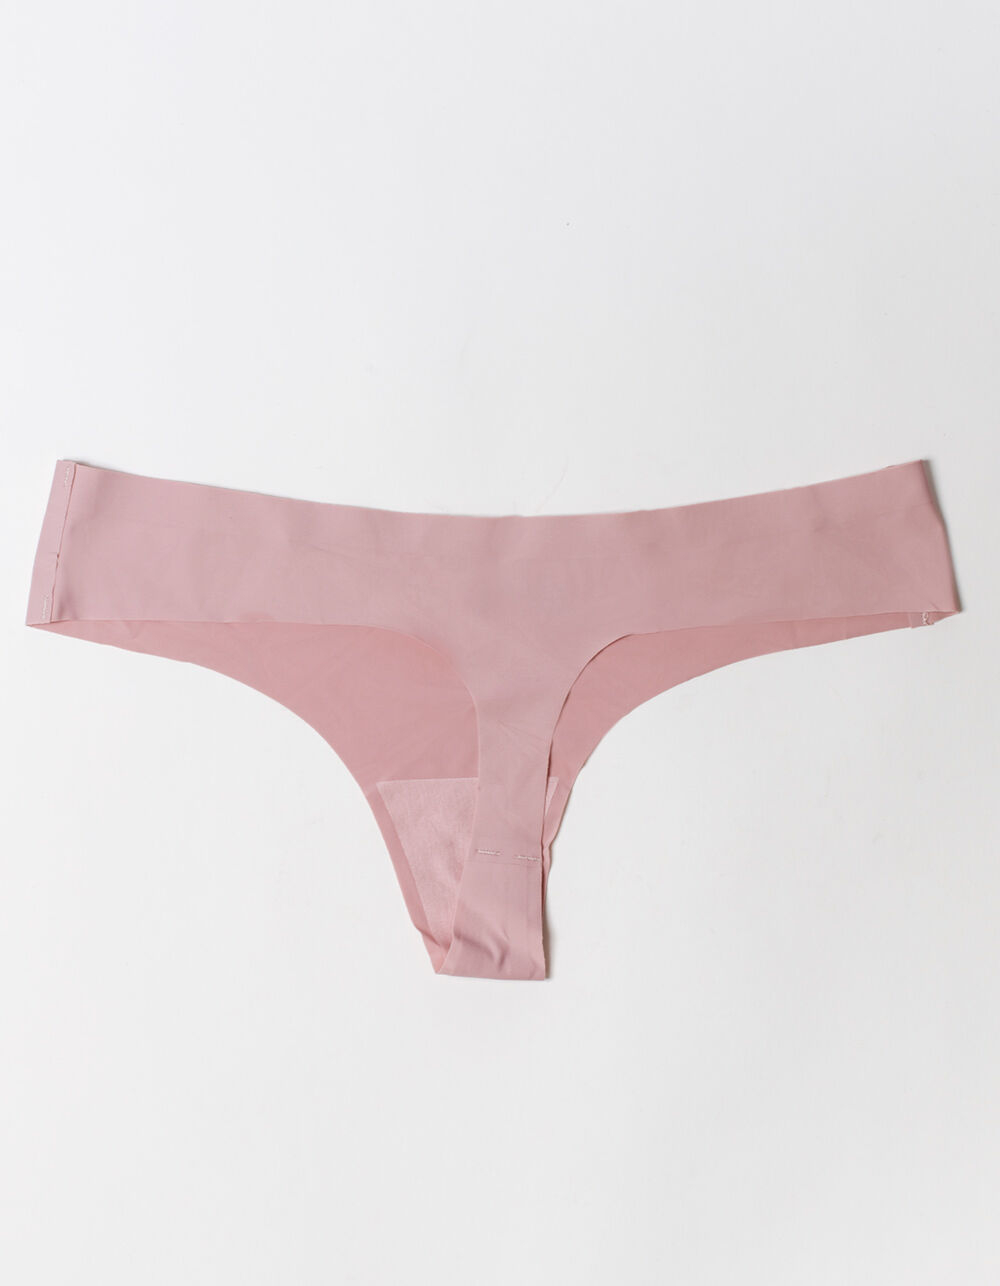 FULL TILT Love Me Now Lasercut Light Pink Thong - LIGHT PINK | Tillys